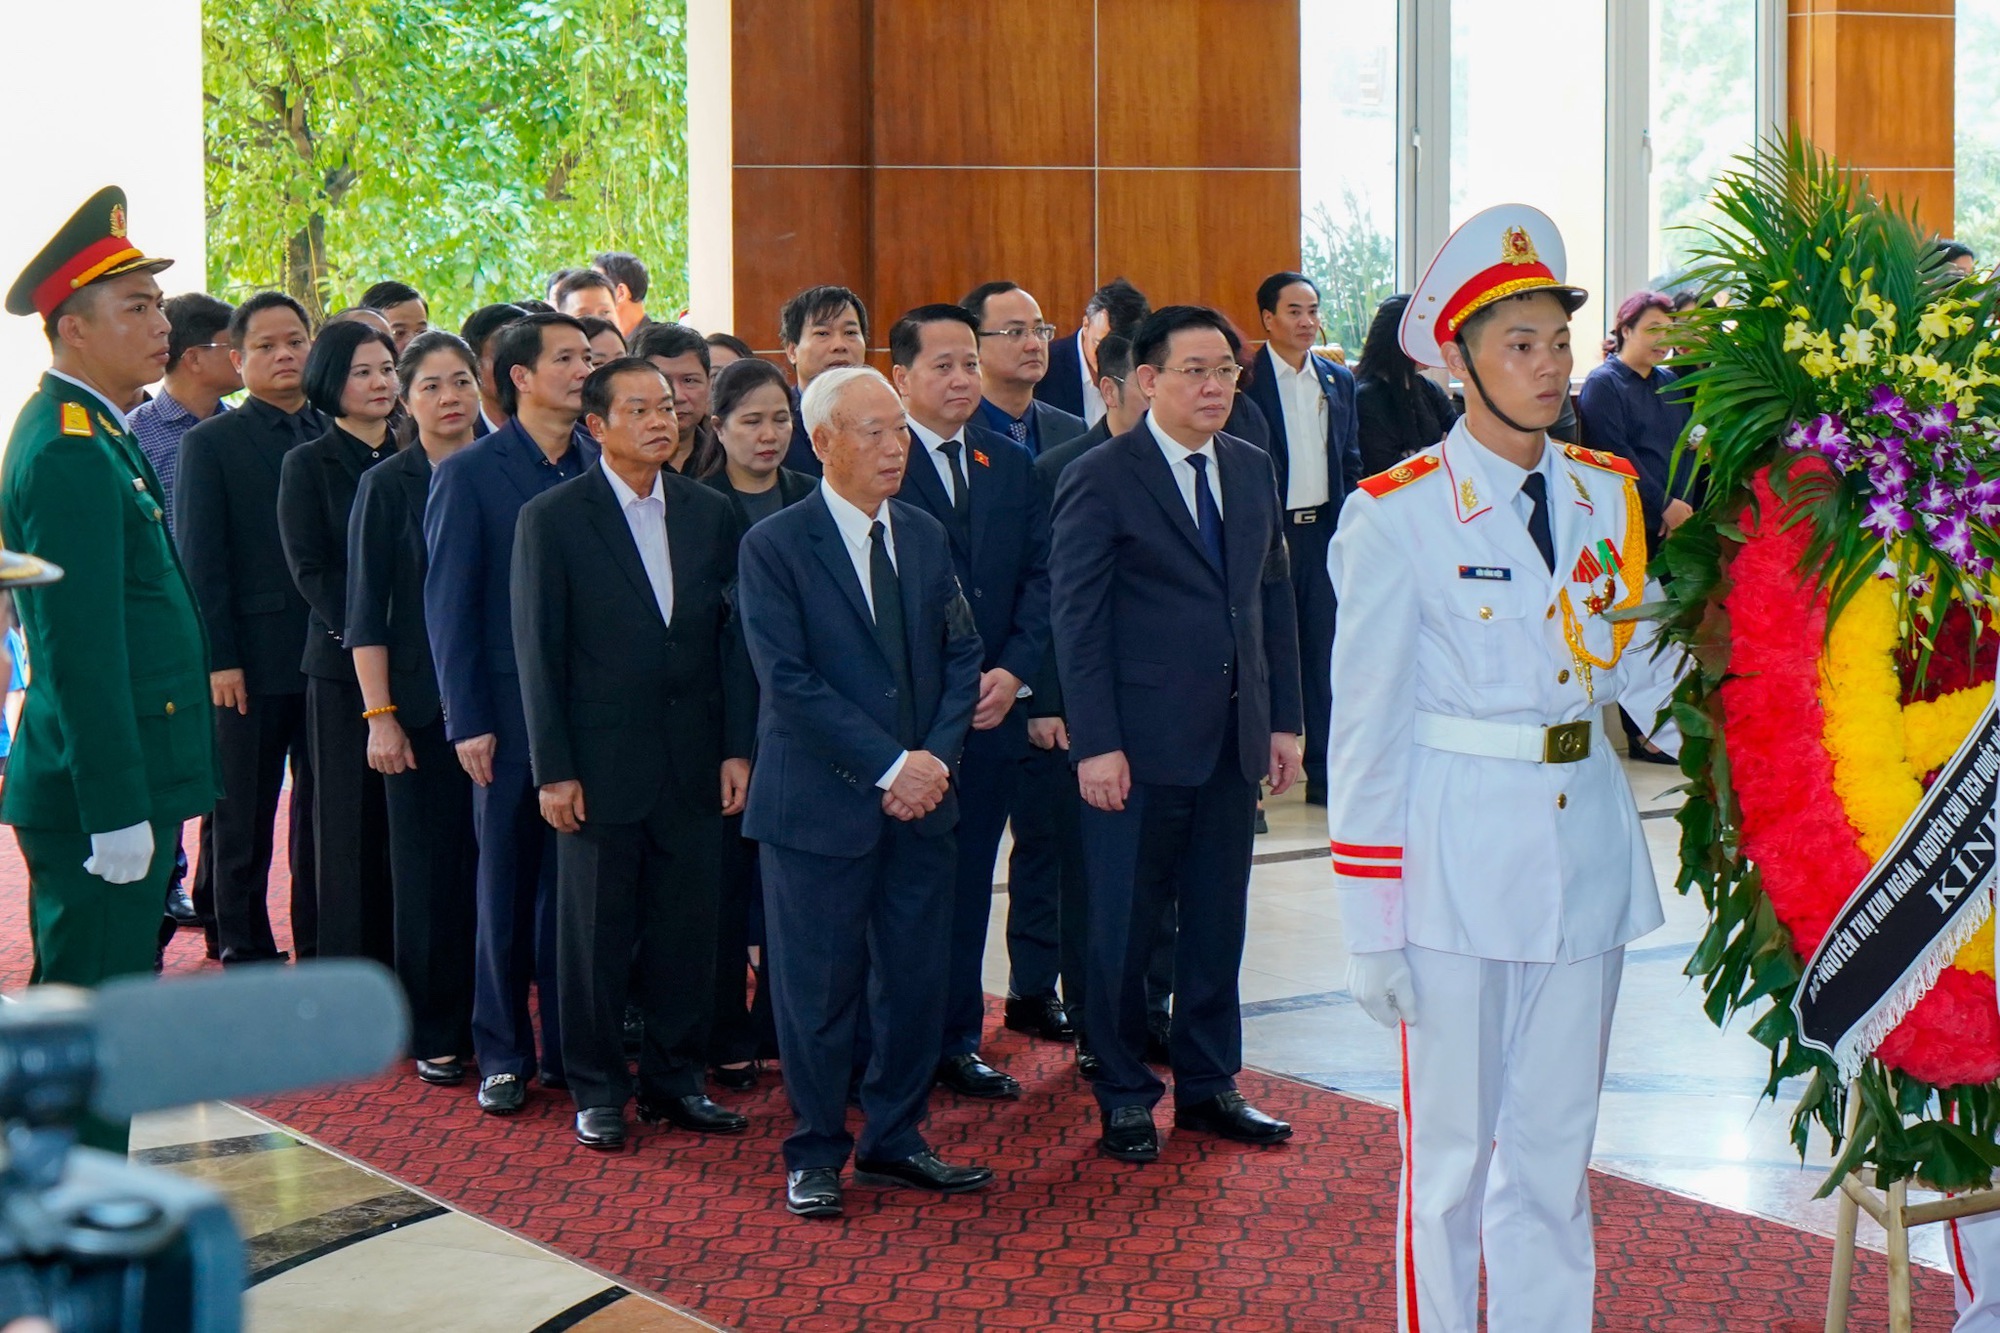 Xúc động lời tiễn biệt của đoàn Lãnh đạo Đảng, Nhà nước dành cho Phó Thủ tướng Lê Văn Thành  - Ảnh 3.